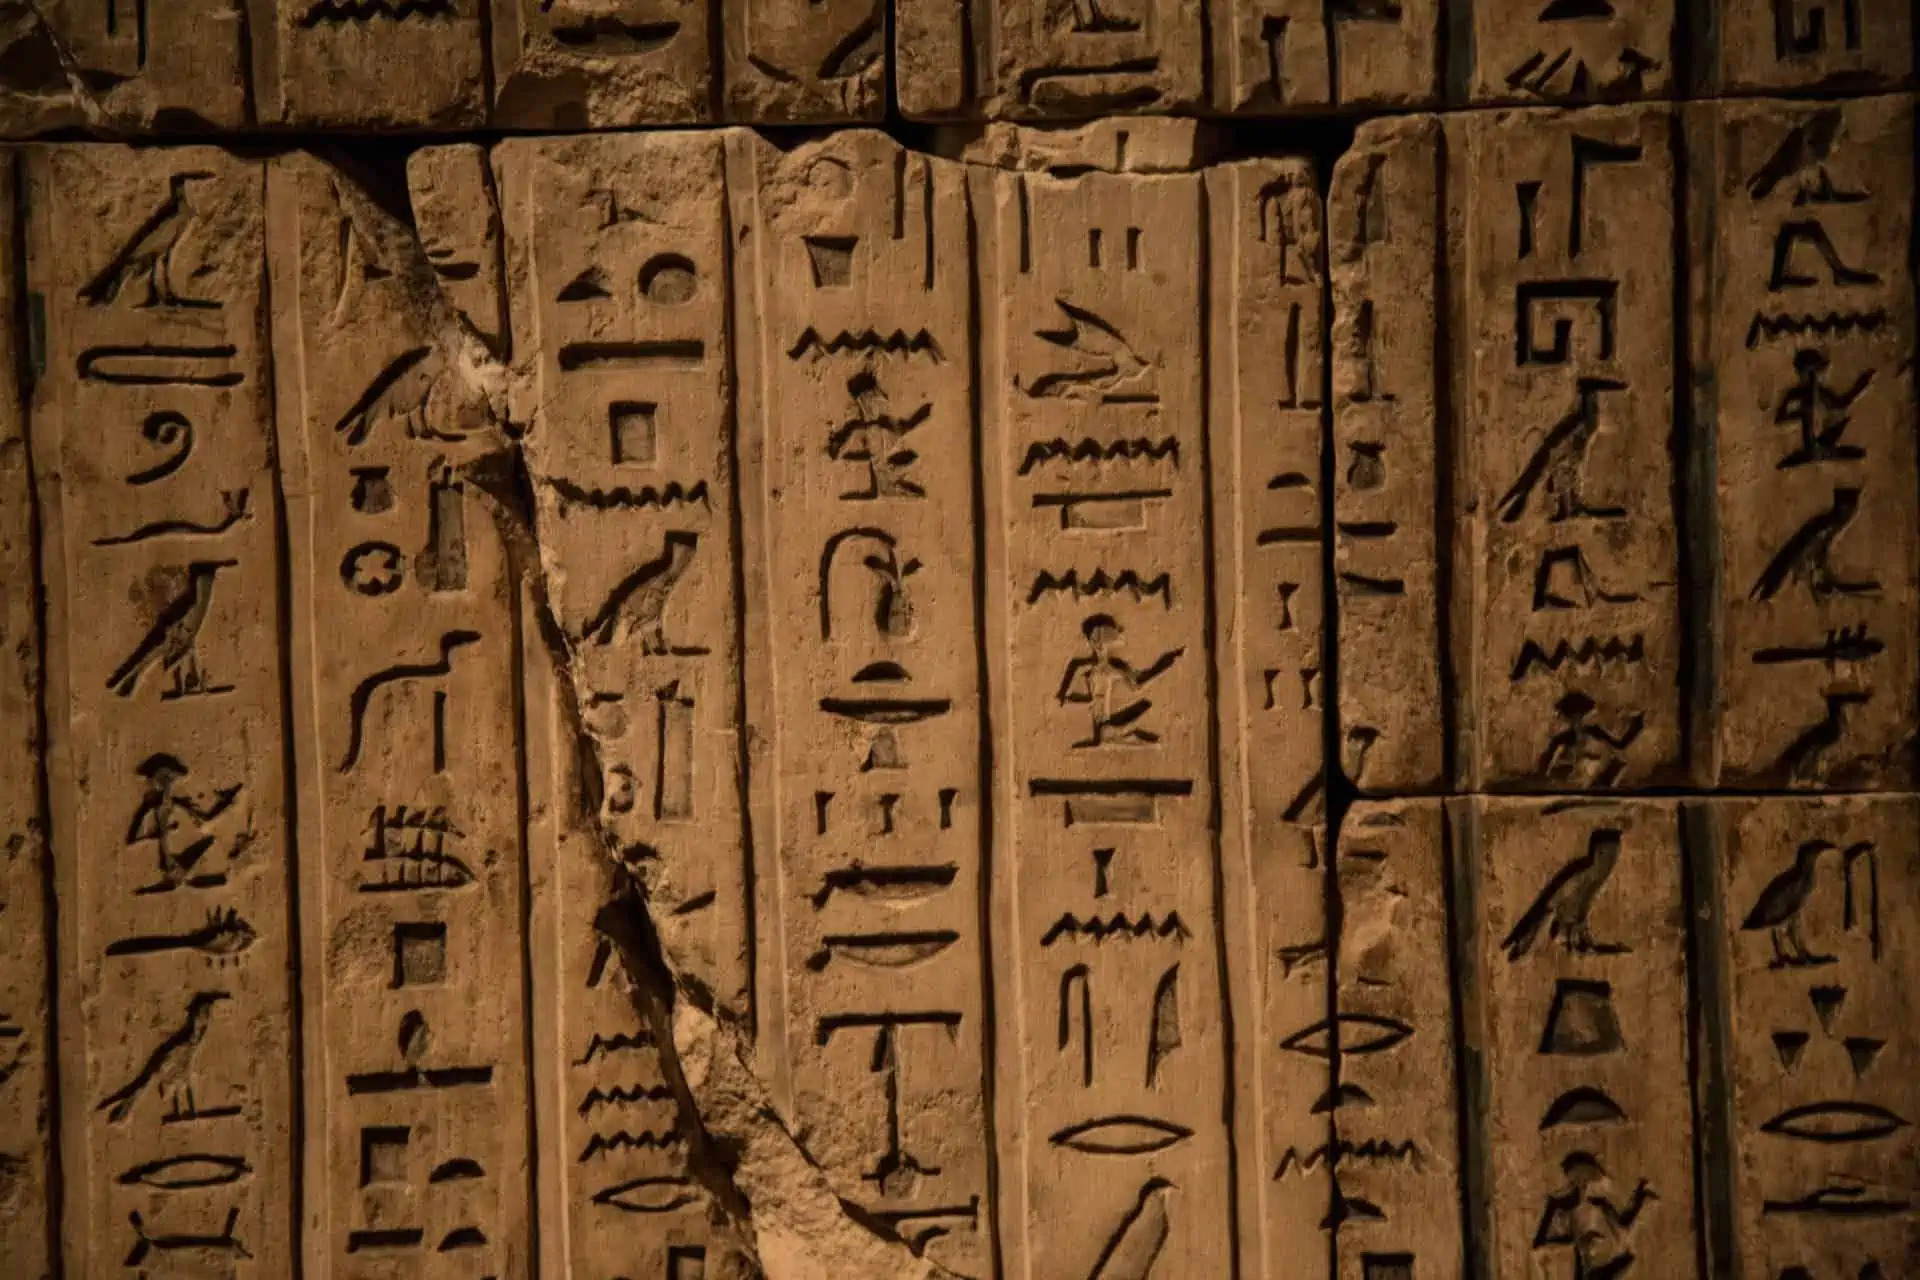 Chữ tượng hình Ai Cập: Hình ảnh chữ tượng hình Ai Cập là một phần quan trọng của văn hóa cổ đại thế giới. Với các kí hiệu khác nhau, chúng là một thước đo quan trọng về trí thông minh và sự phát triển của người Ai Cập. Hãy đến và khám phá những bí mật thú vị của chữ tượng hình này.